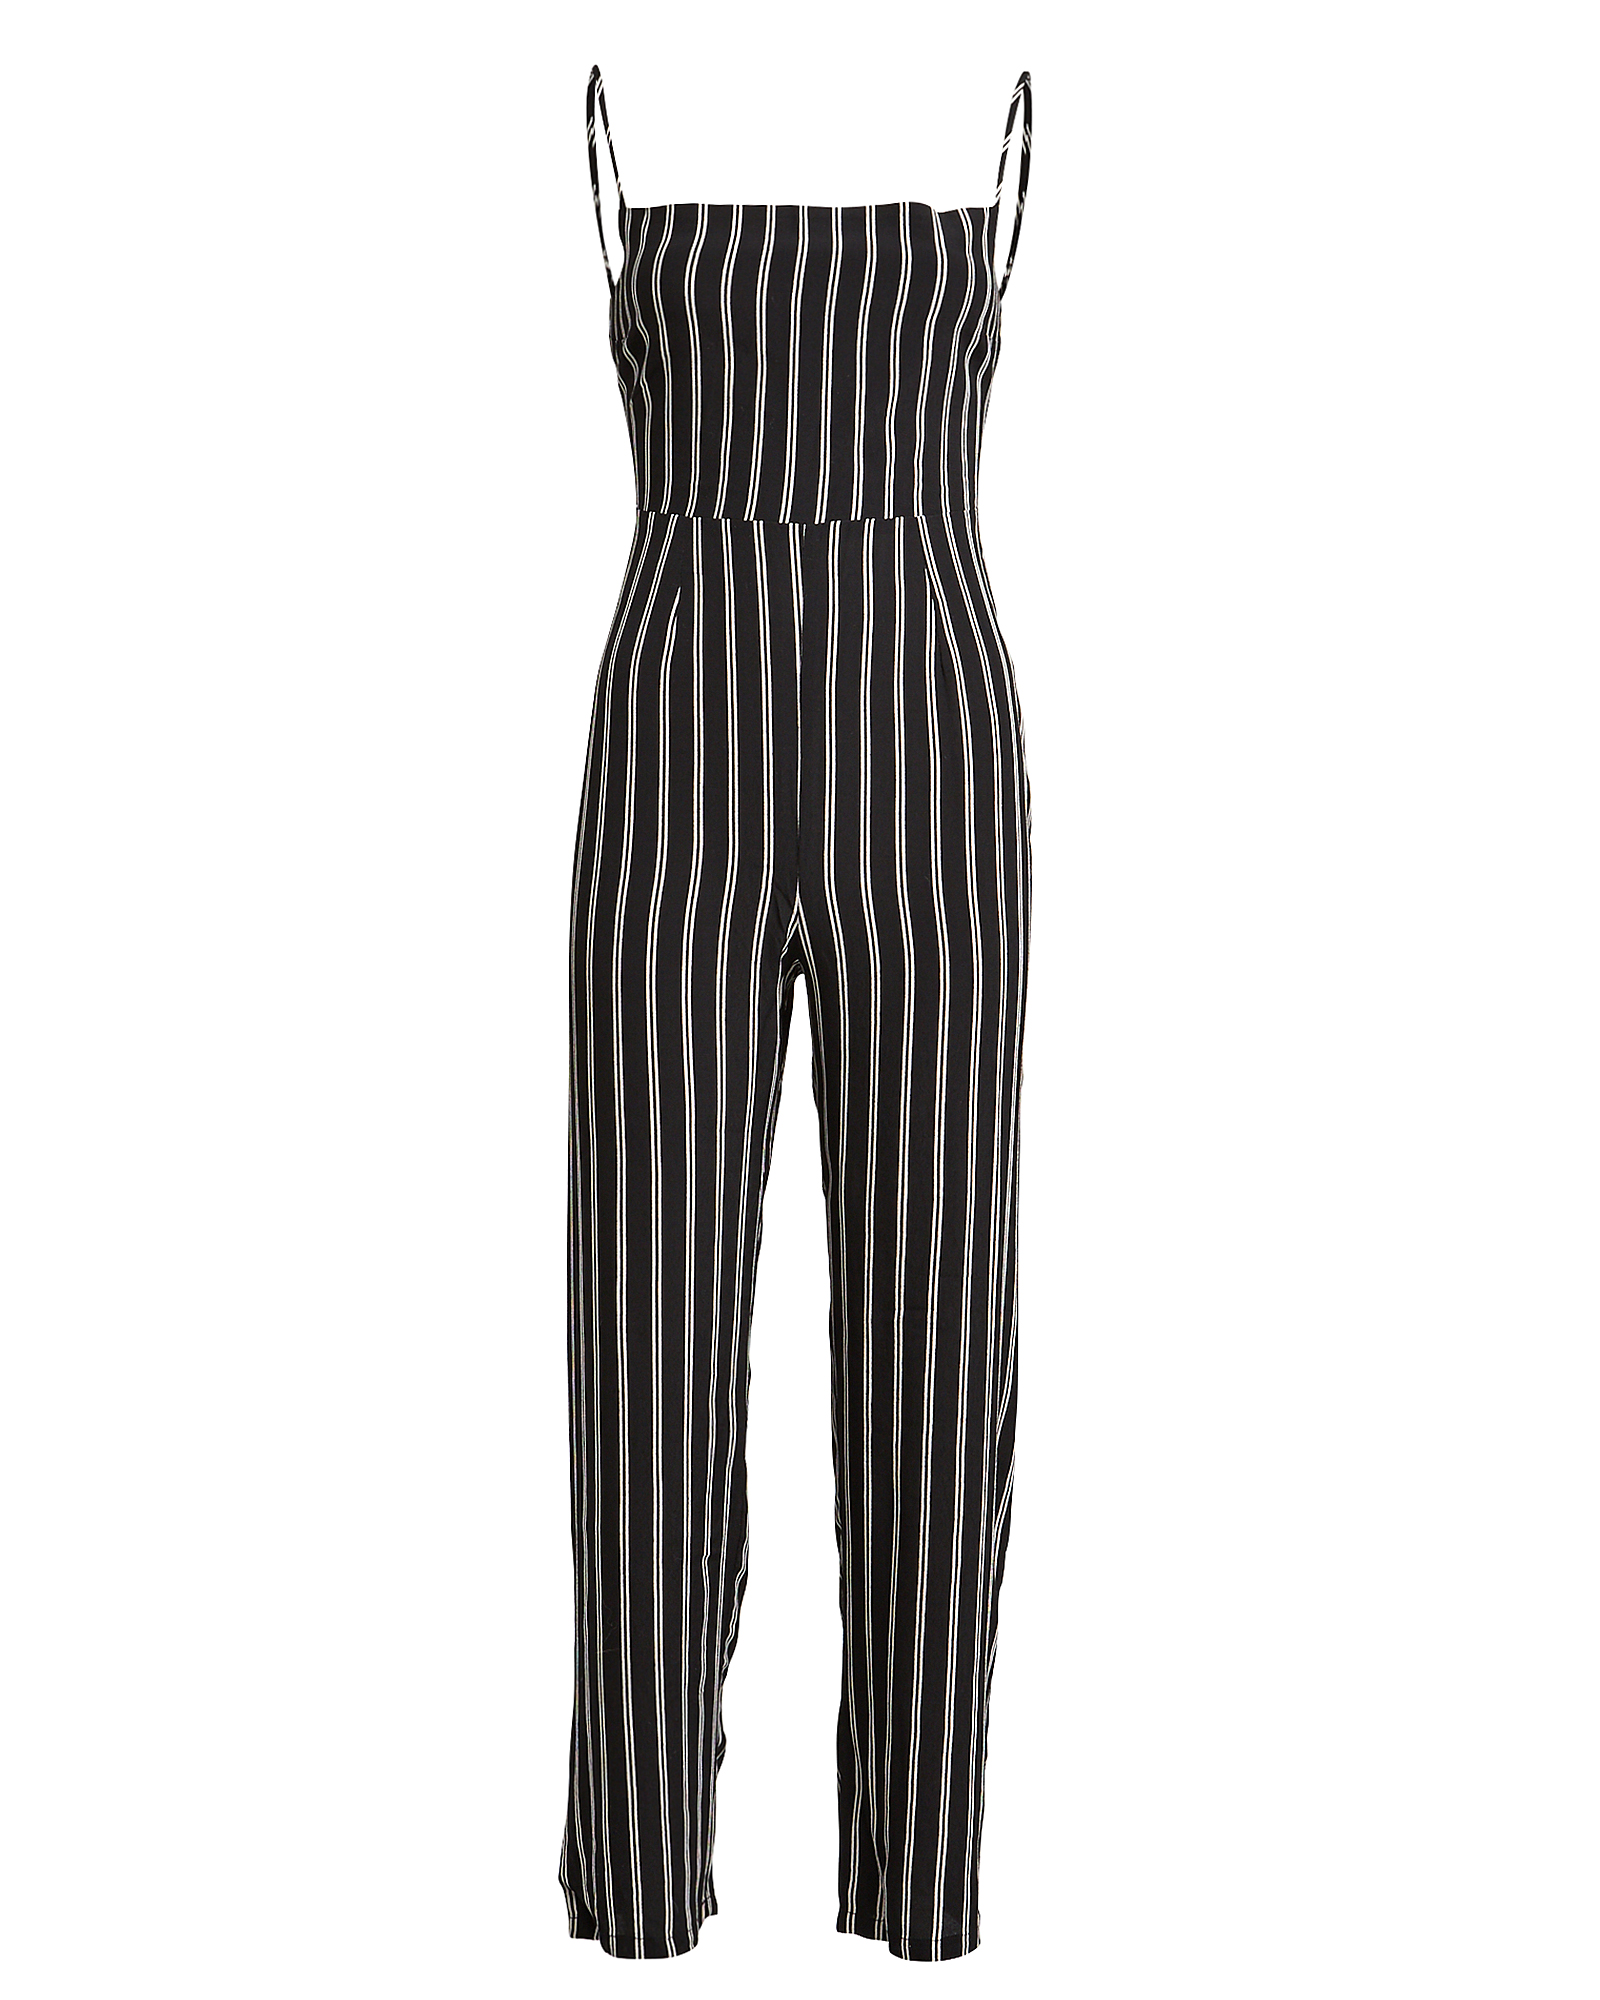 Flynn Skye Lexi Jumpsuit In Black Stripes | ModeSens